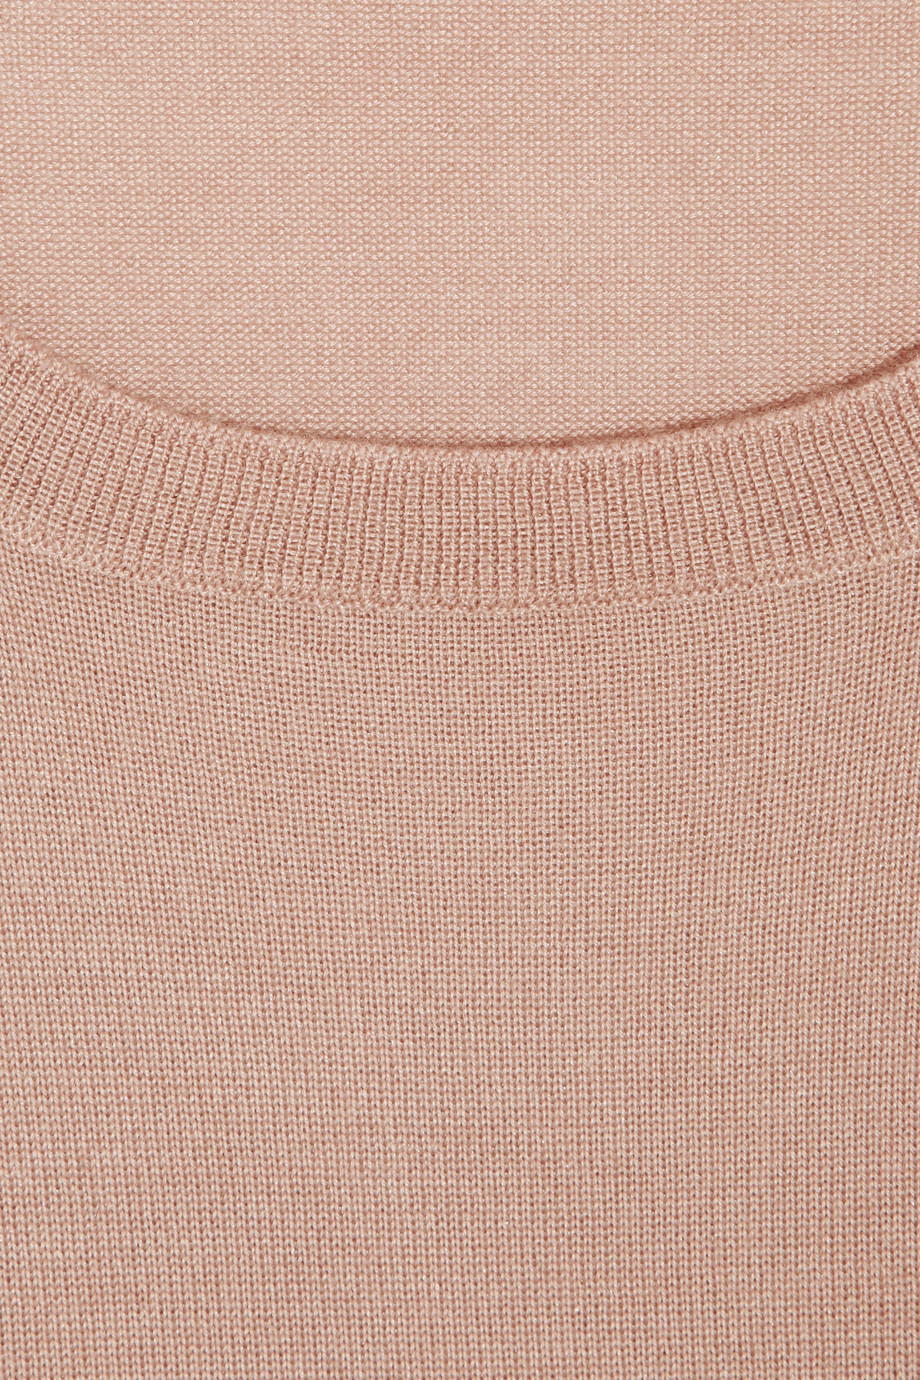 Miu miu Fine-Knit Cashmere And Silk-Blend Sweater in Pink | Lyst